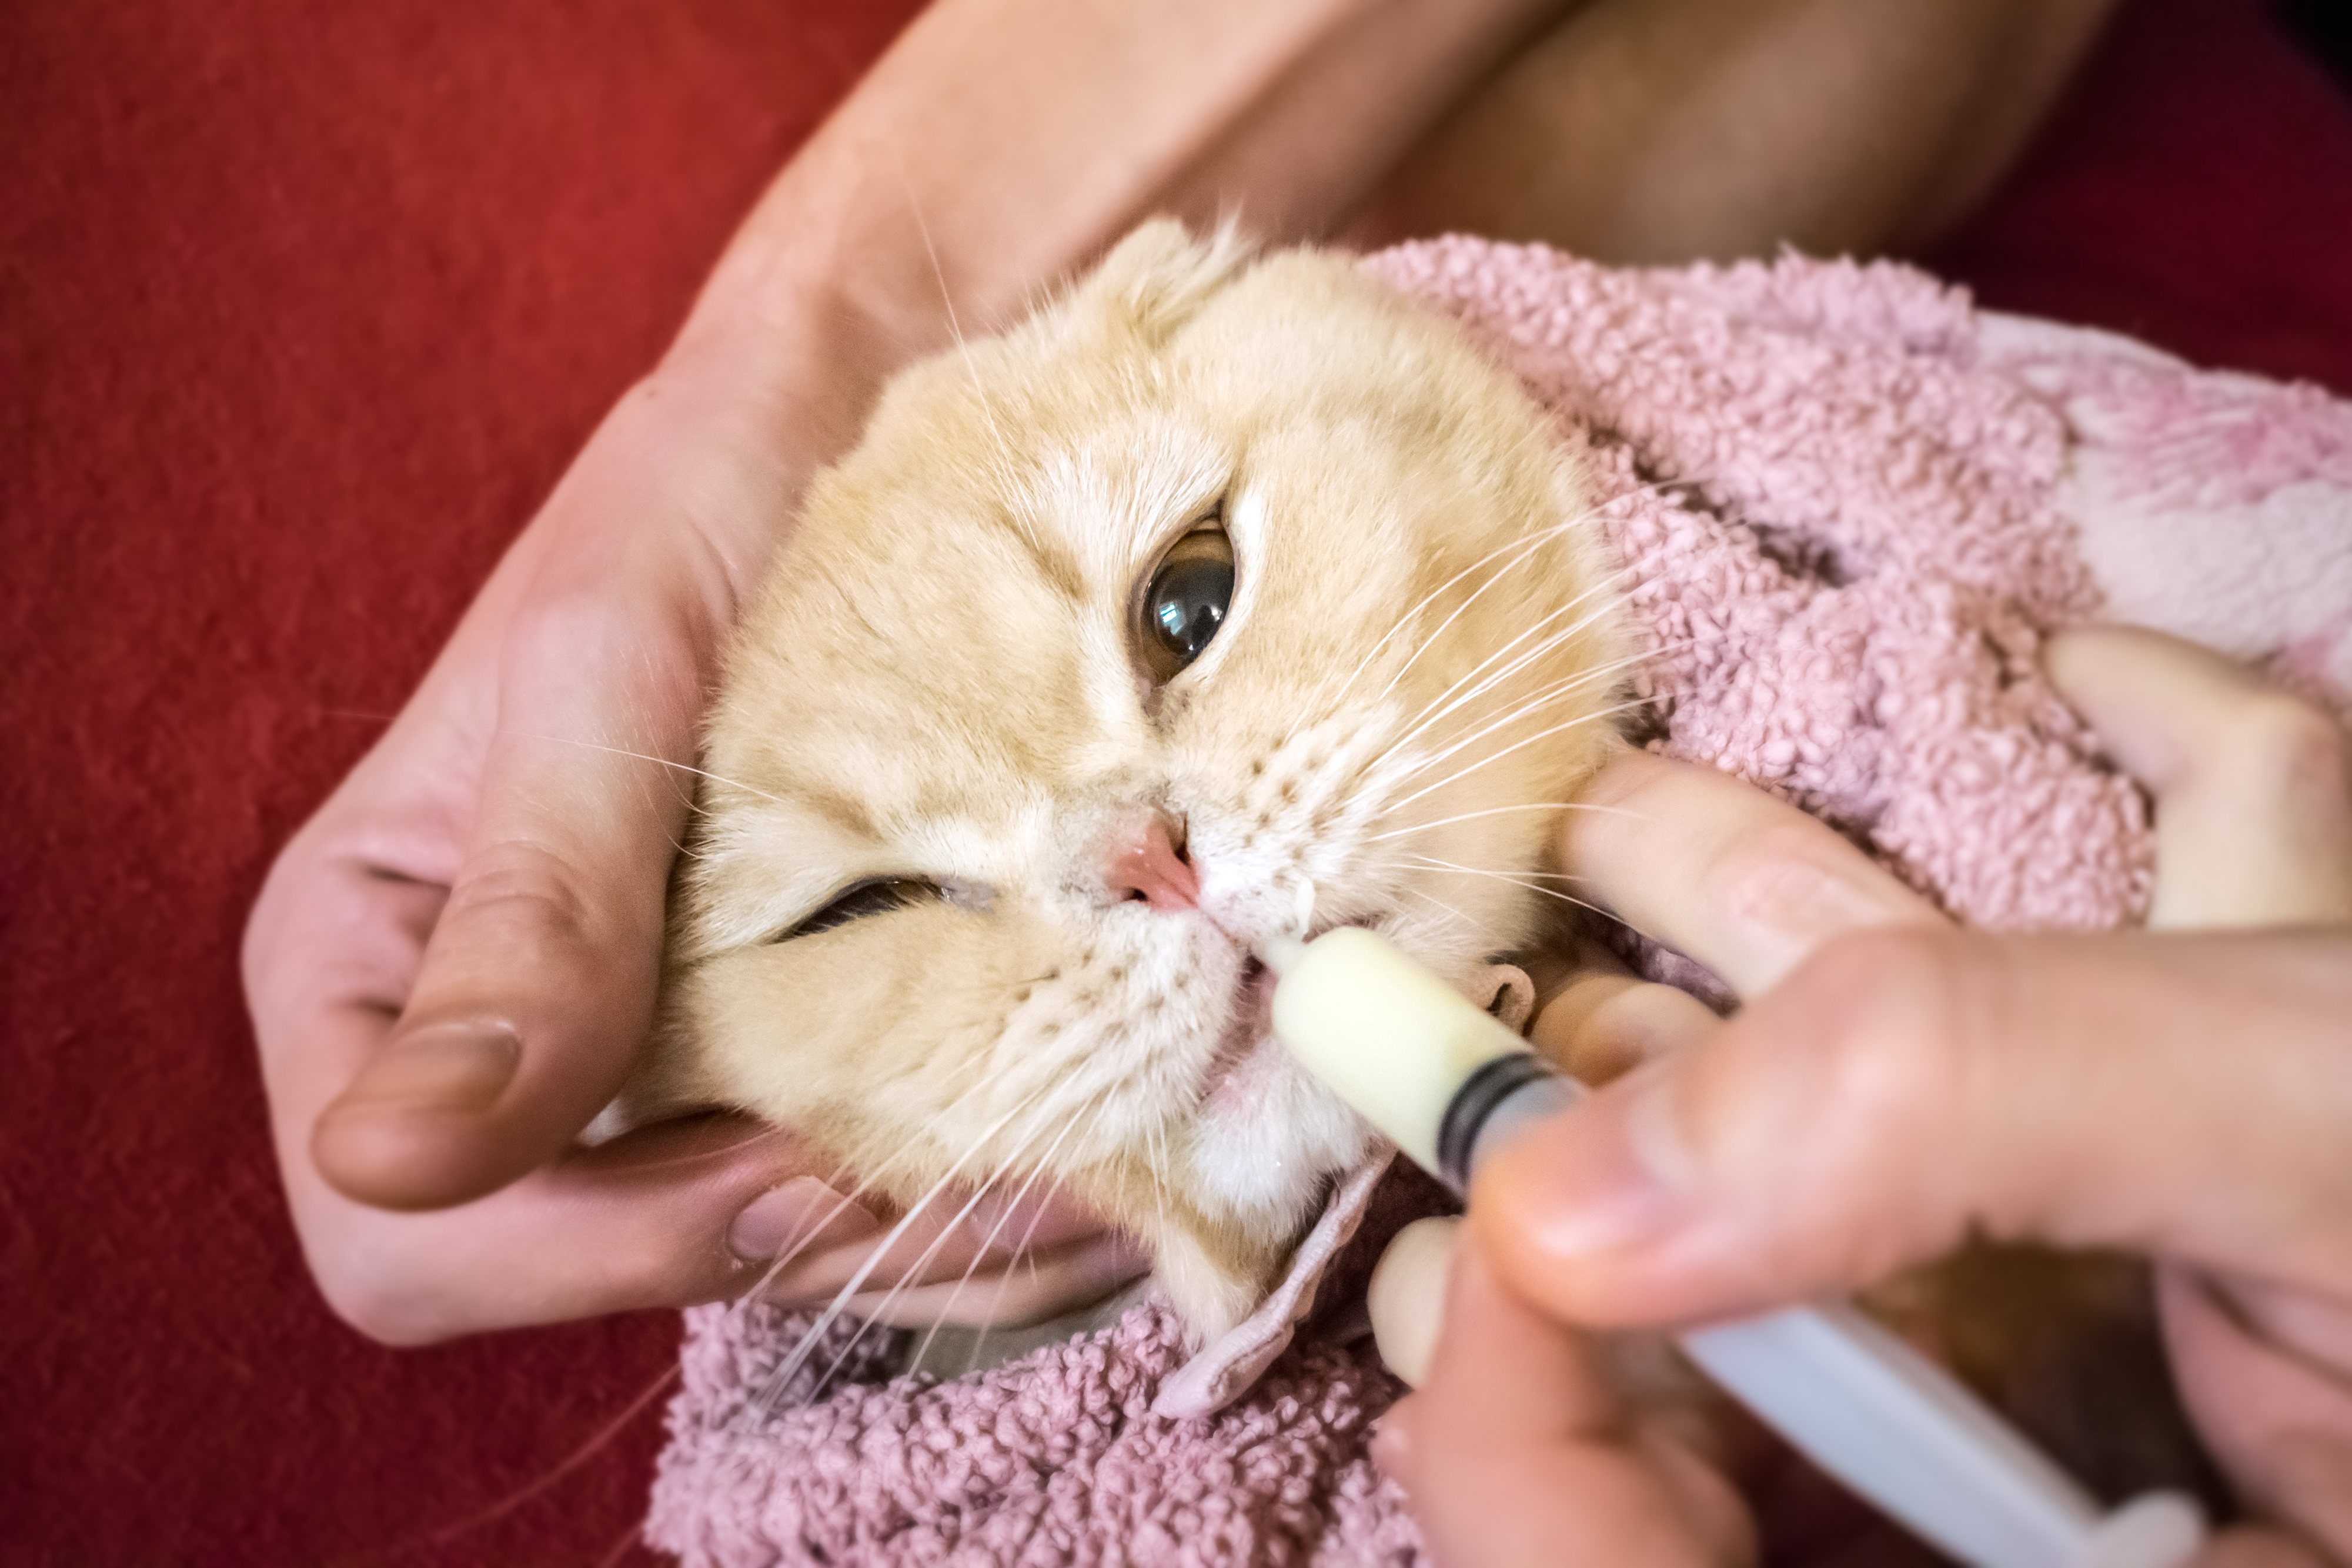 La mejor manera de prevenir que nuestro gato se intoxique con medicación humana es dejarla fuera de su alcance